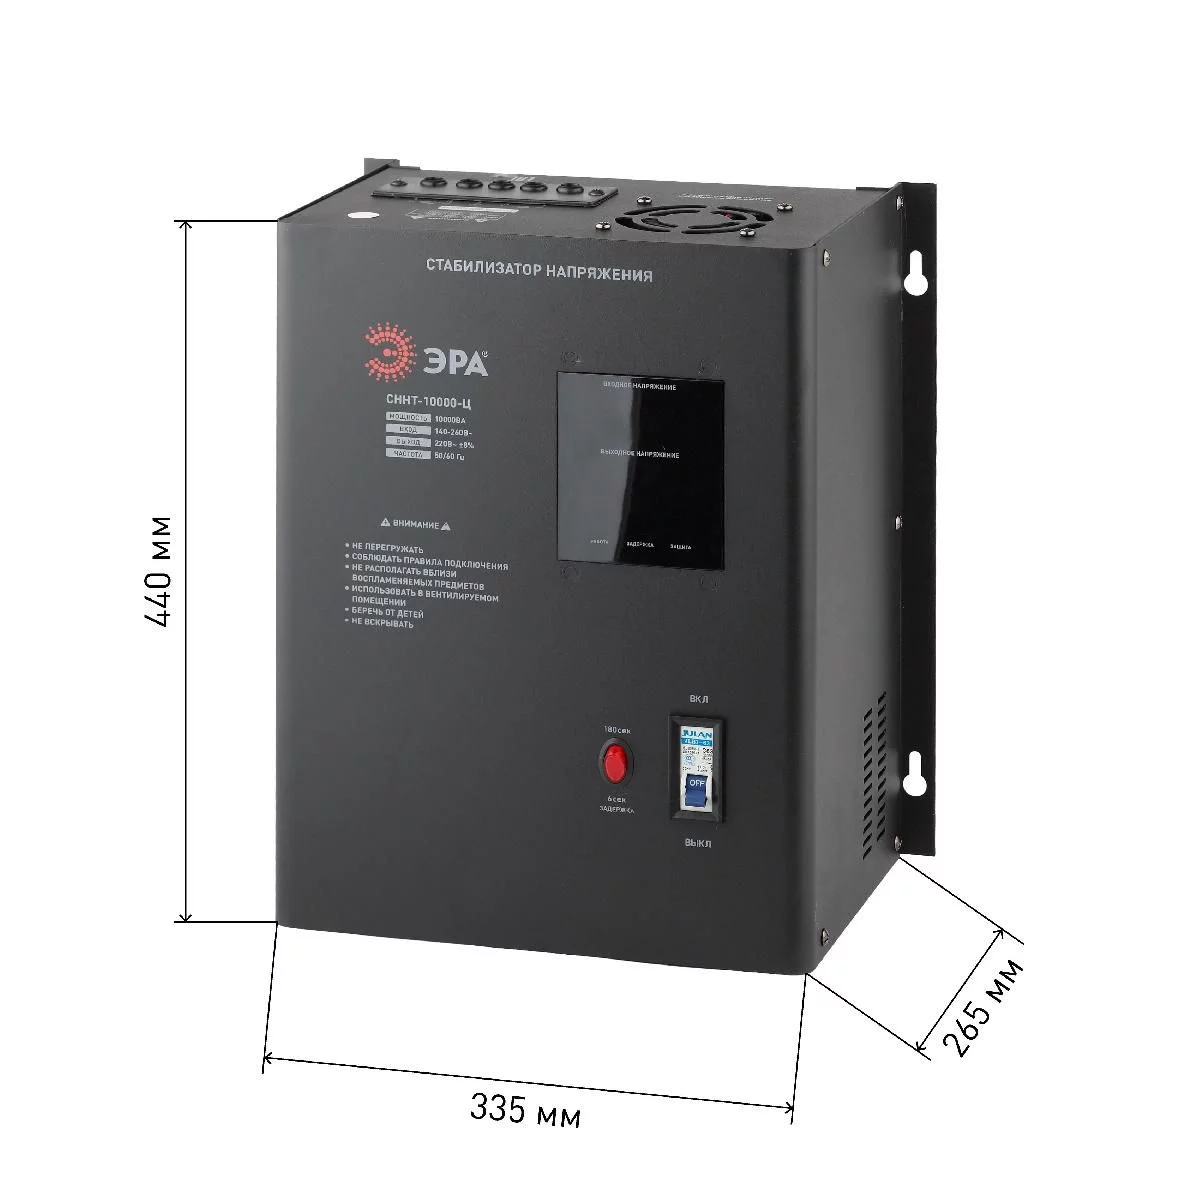 СННТ-10000-Ц ЭРА Стабилизатор напряжения настенный, ц.д., 140-260В/220/В, 10000ВА (20)